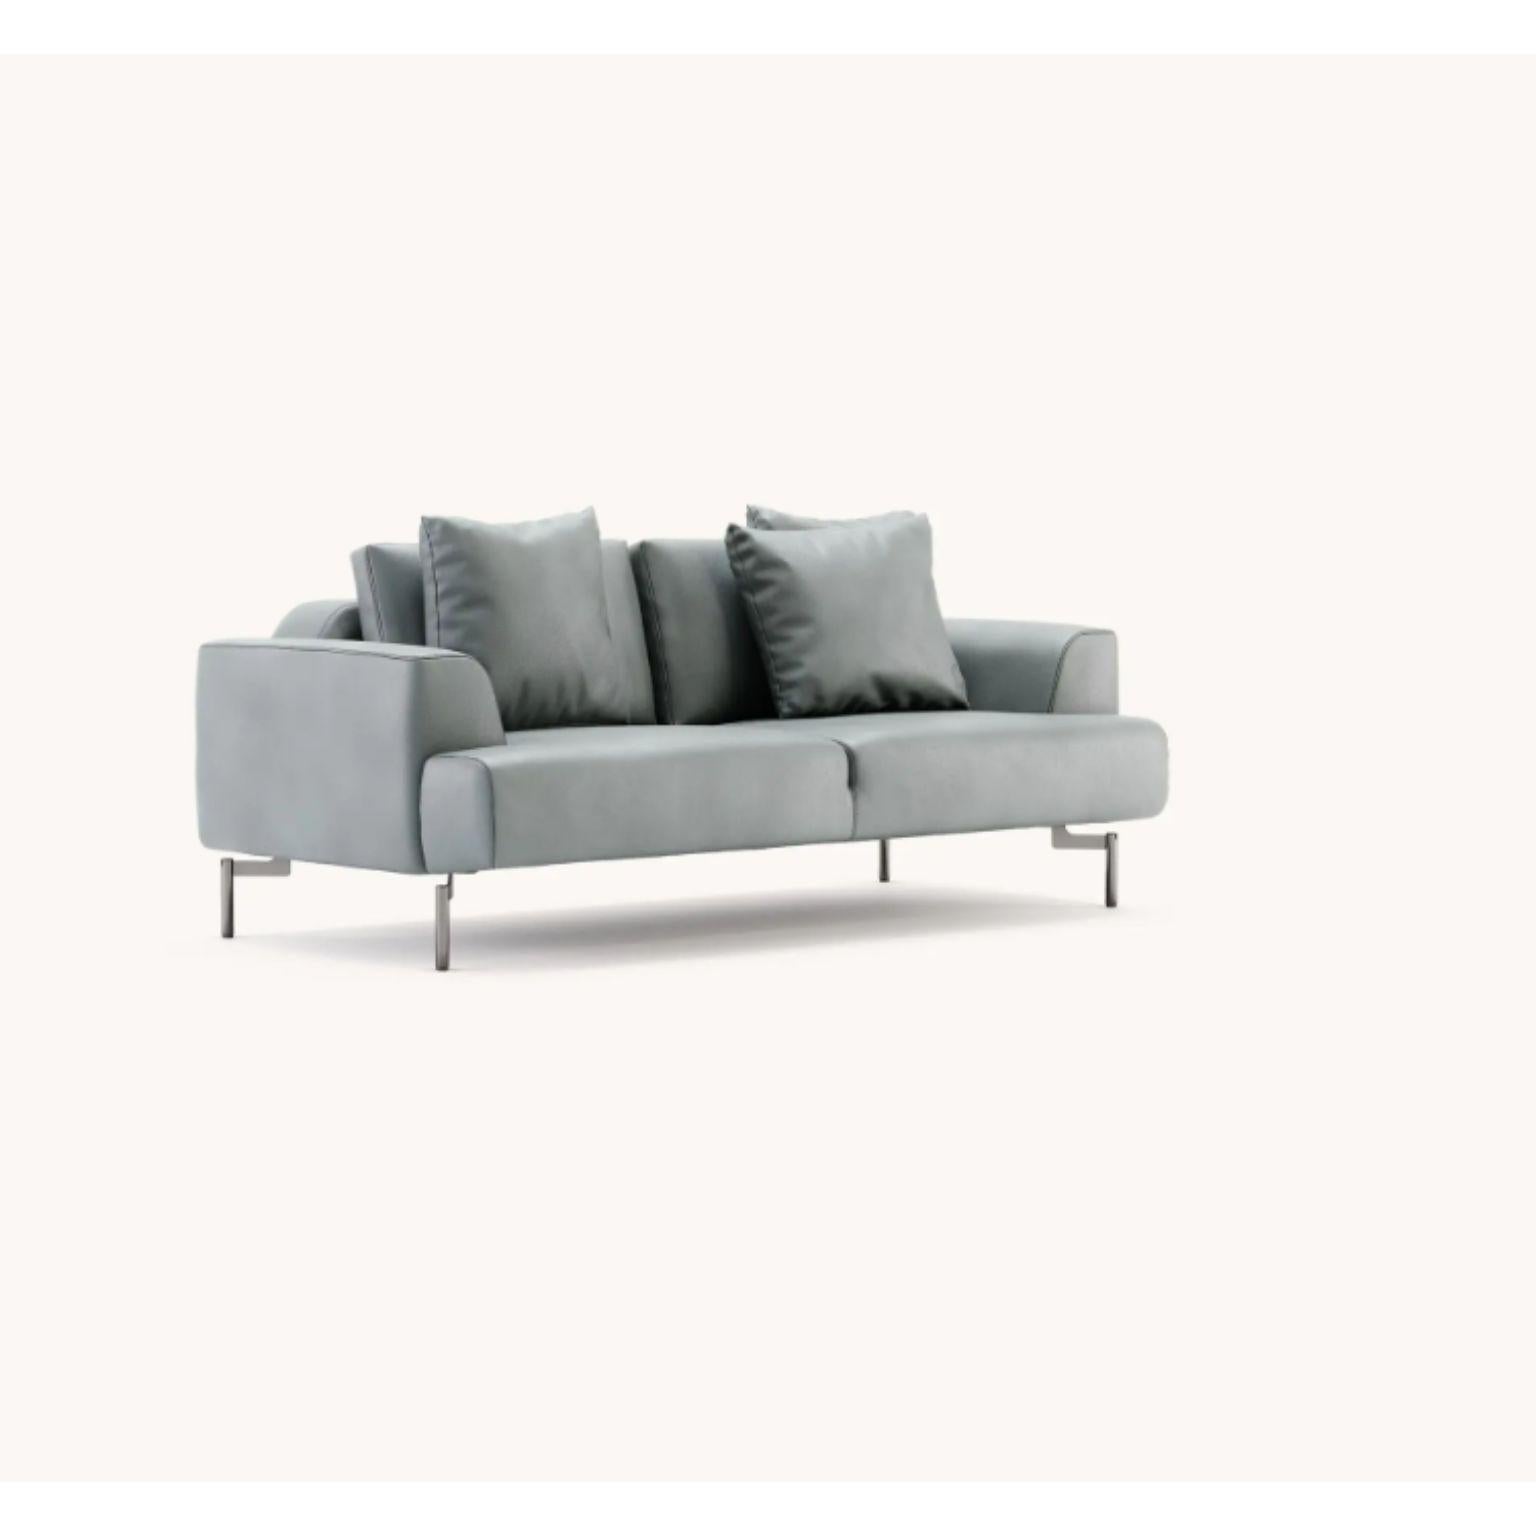 Taís 2 sitz sofa by Domkapa
MATERIALIEN: Naturleder (Desna Polvere), polierter Edelstahl. 
Abmessungen: B 190 x T 95 x H 88 cm.
Auch in verschiedenen MATERIALEN erhältlich. 
mit 3 Kissen aus dem gleichen Stoff wie die Struktur (50x50 cm)

Taís